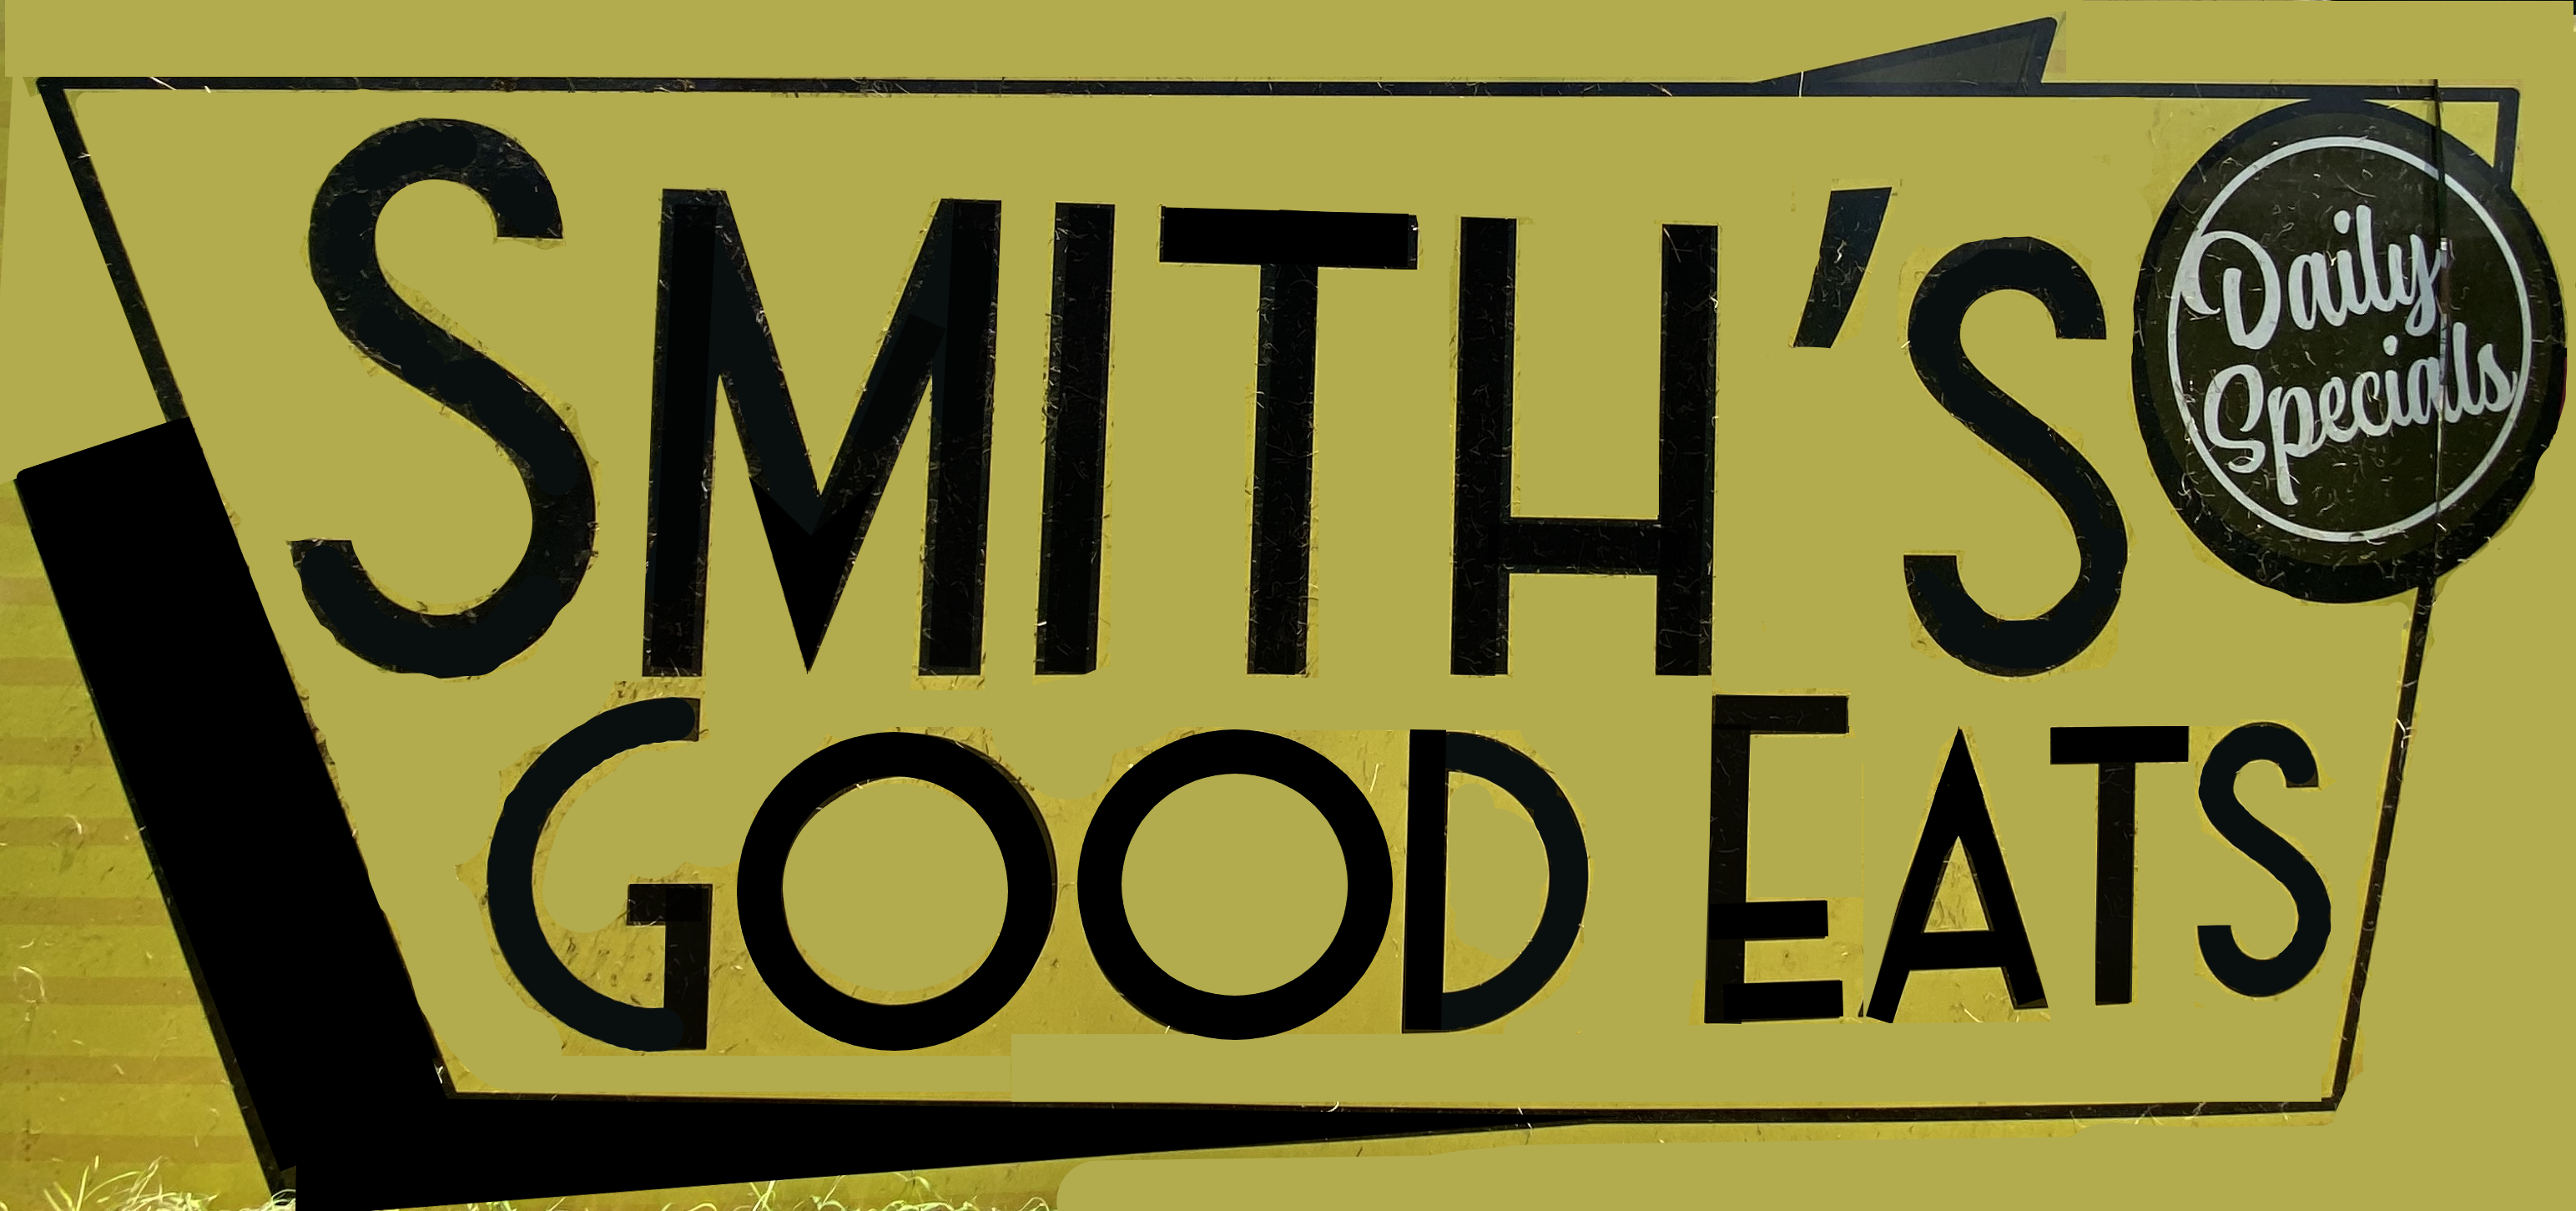 Smiths Good Eats